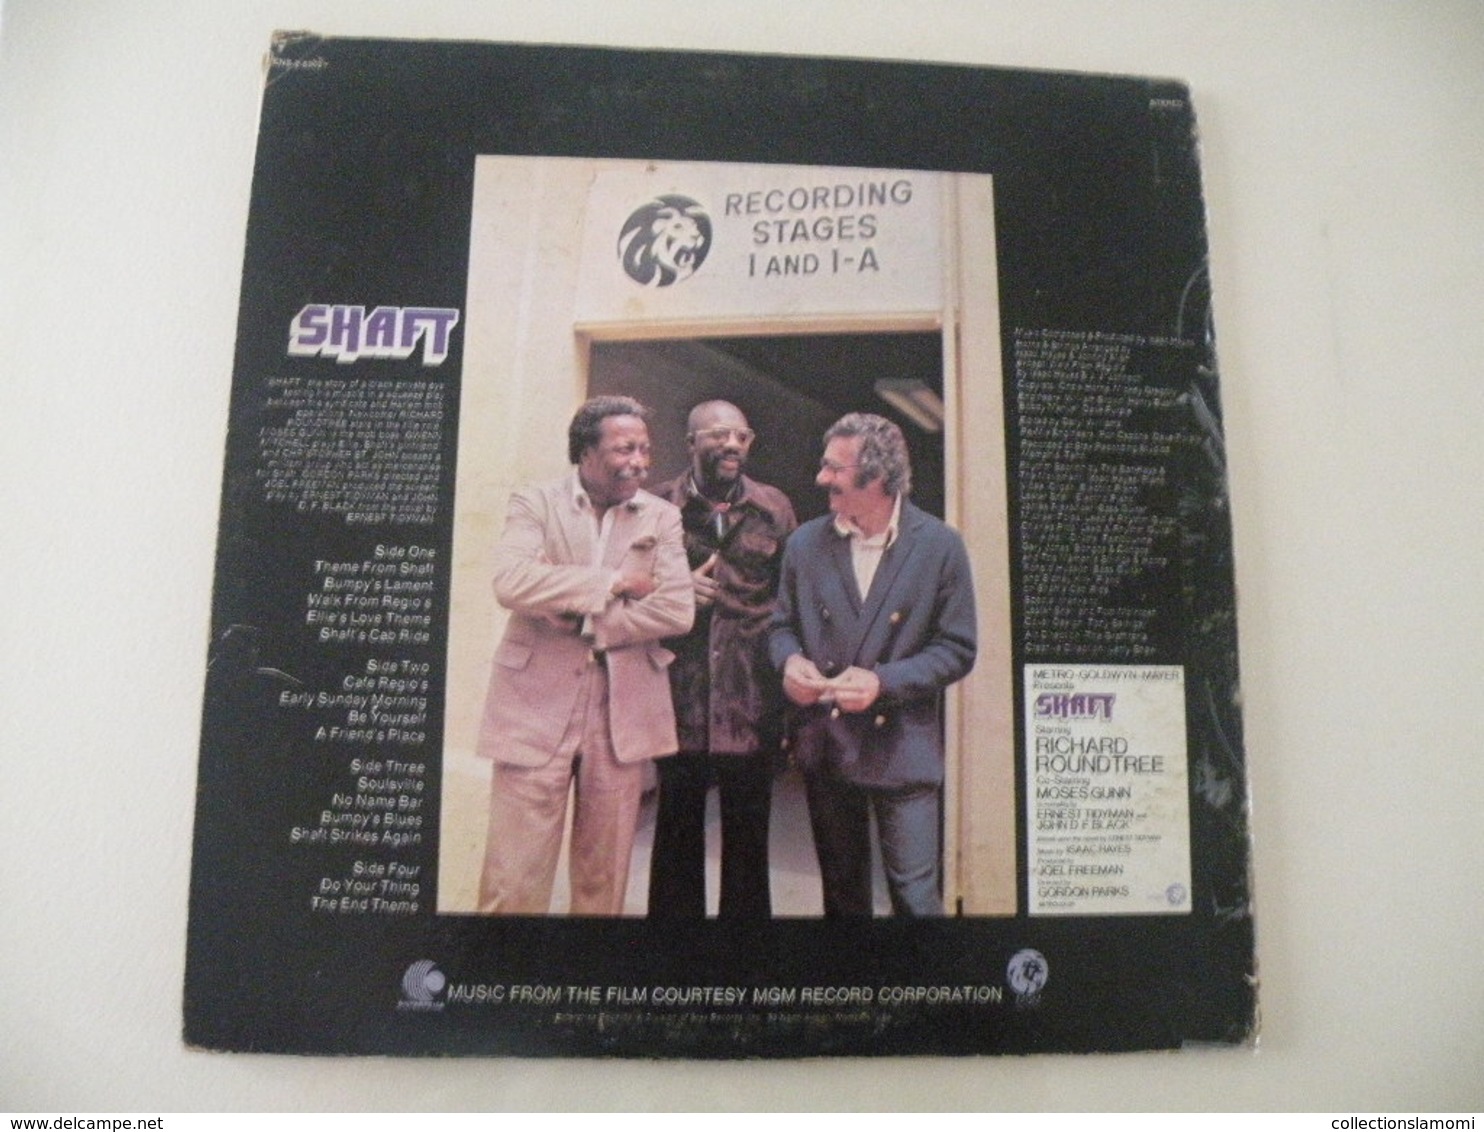 Isaac Hayes, Shaft  (Titres sur photos) - Vinyle 33 T LP double album